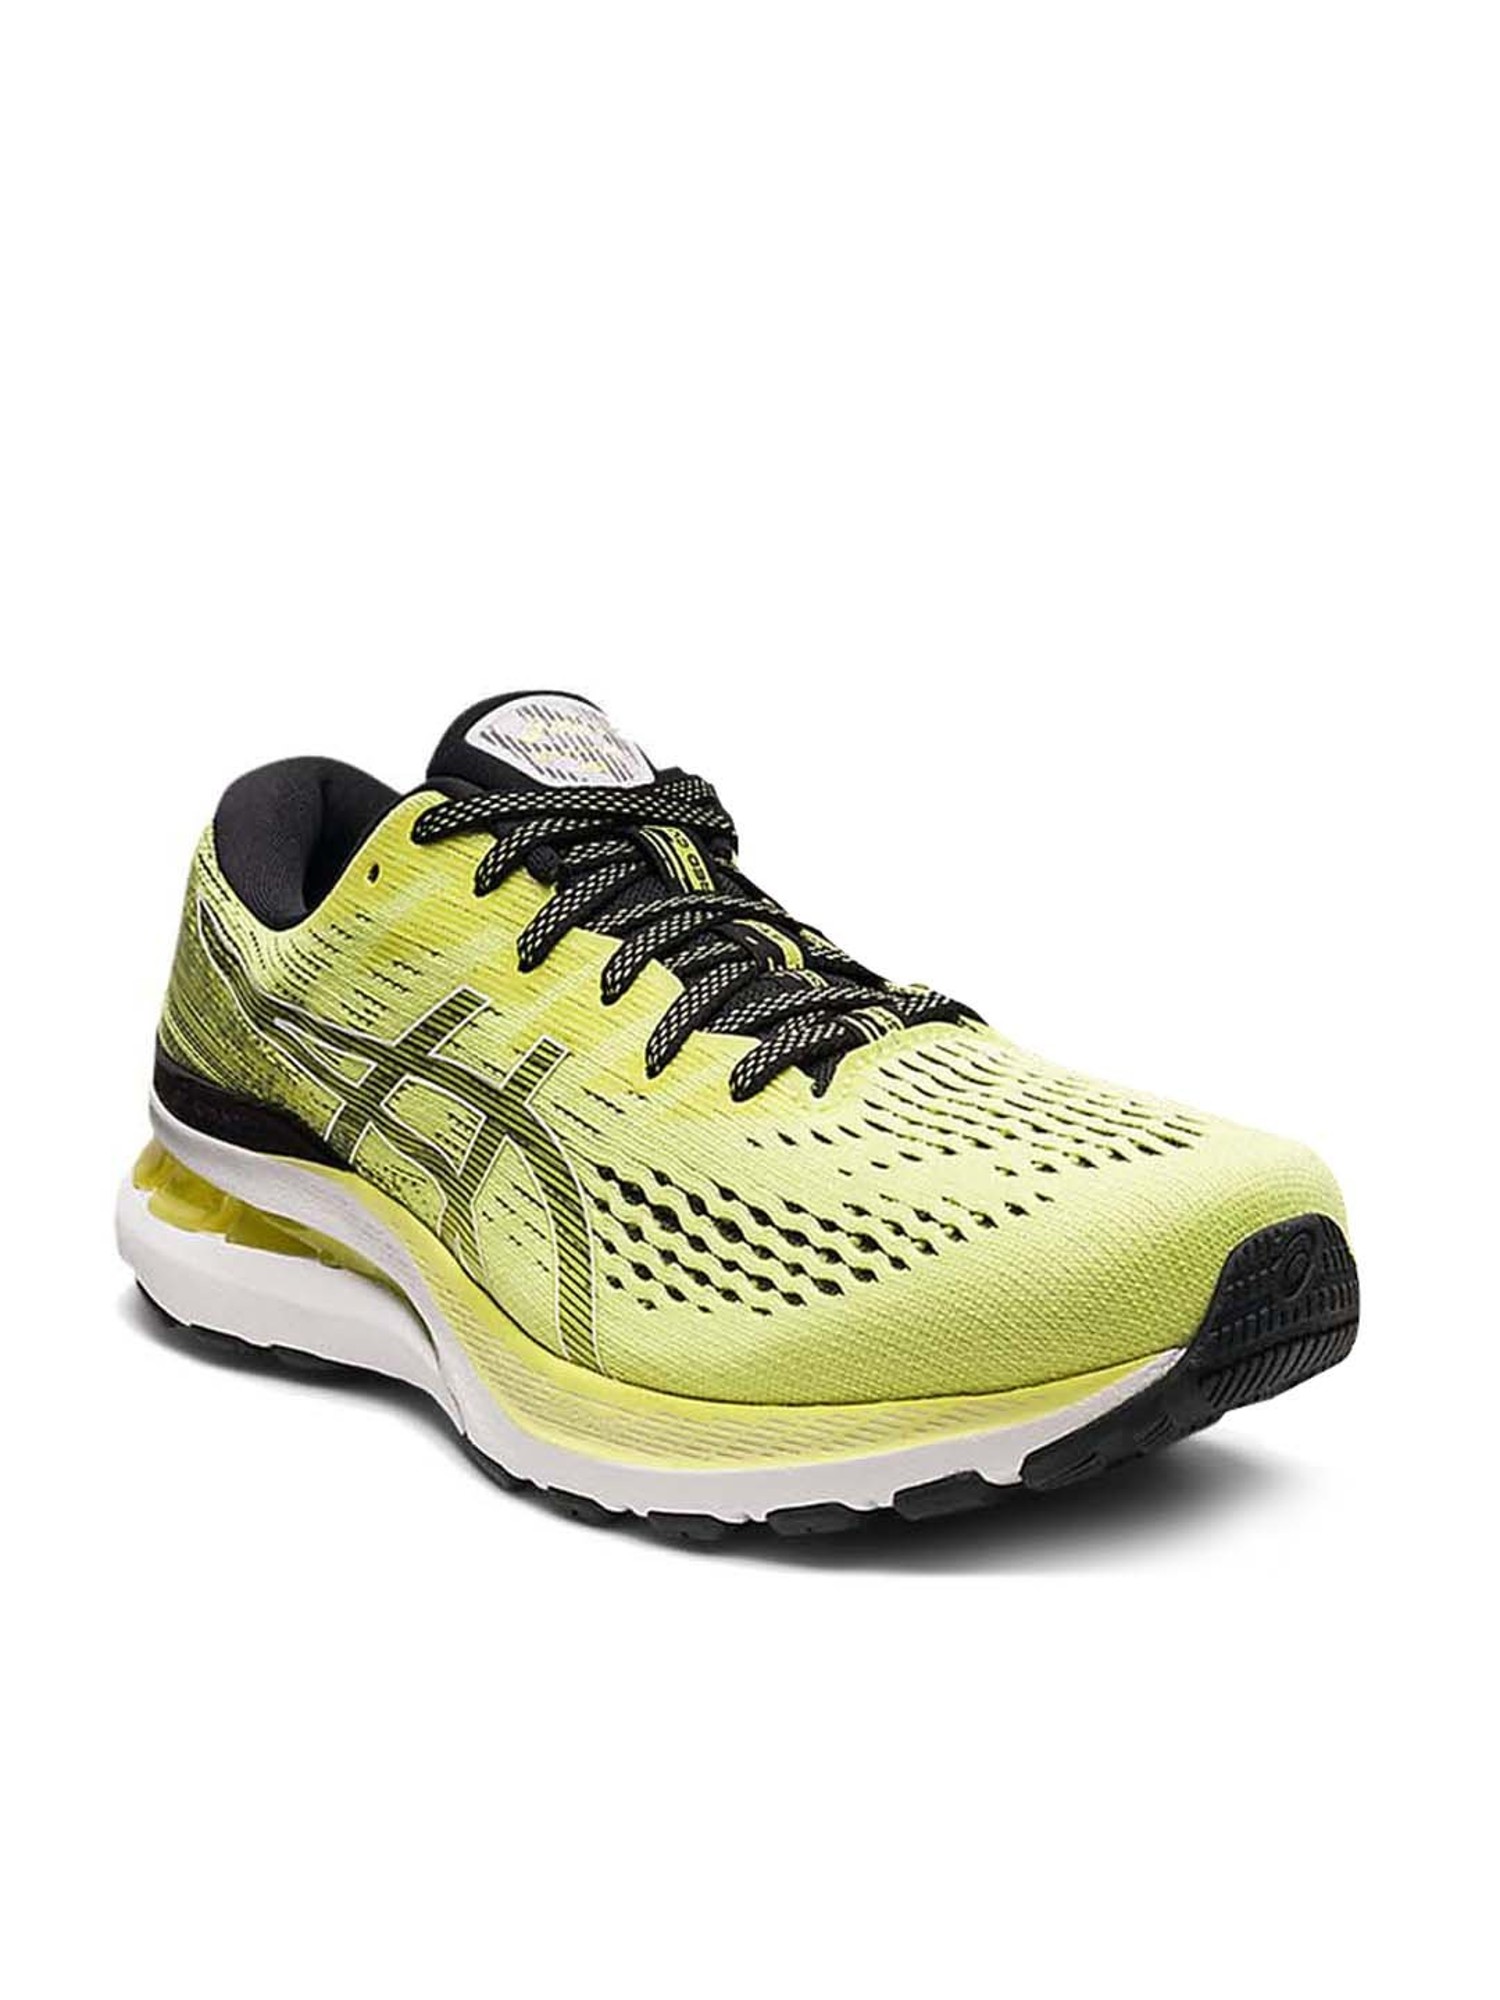 Buy Asics Men's GEL-Kayano 28 Glow Yellow Running Shoes for Men at Best  Price @ Tata CLiQ